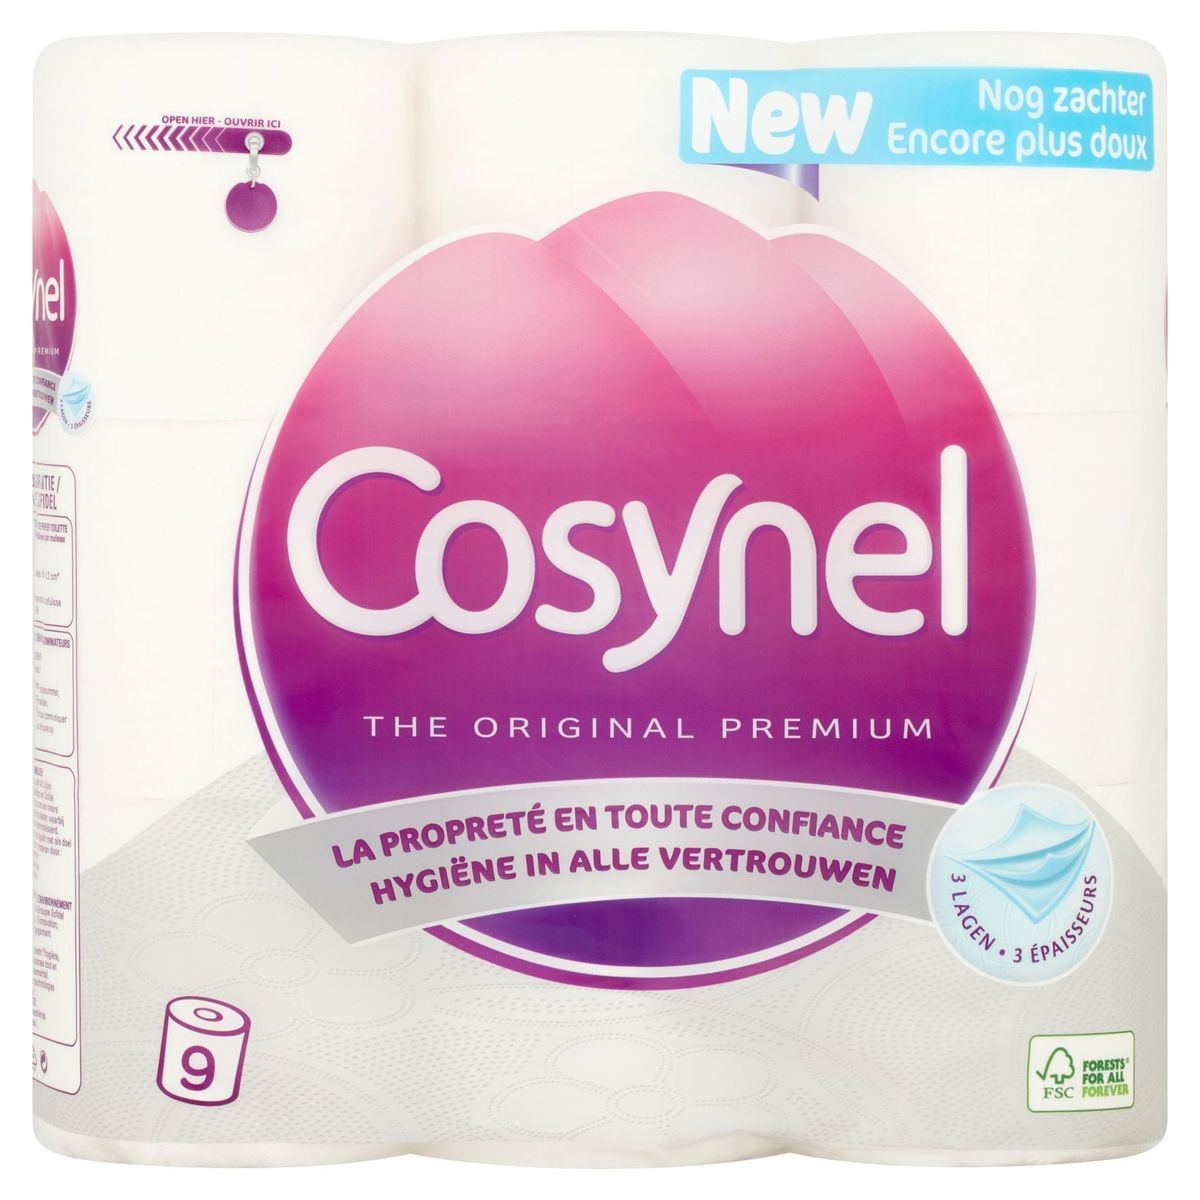 Cosynel The Original Premium Wit 3 Lagen Toiletpapier 9 Rollen